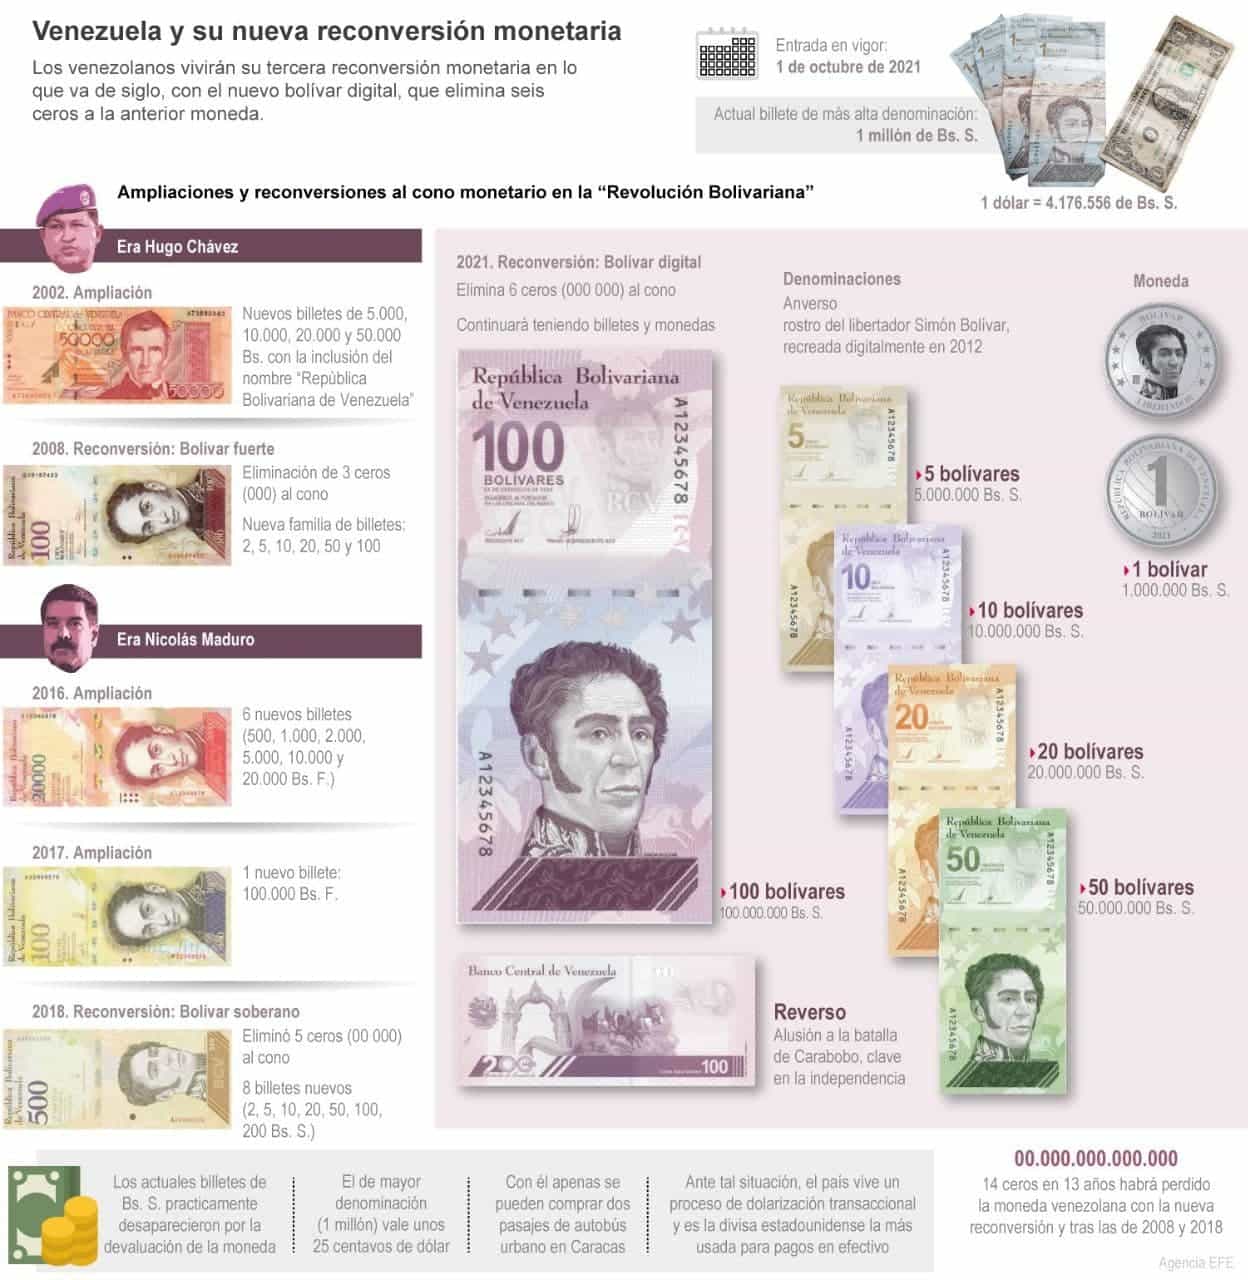 [Infografía] Venezuela y su nueva reconversión monetaria 1